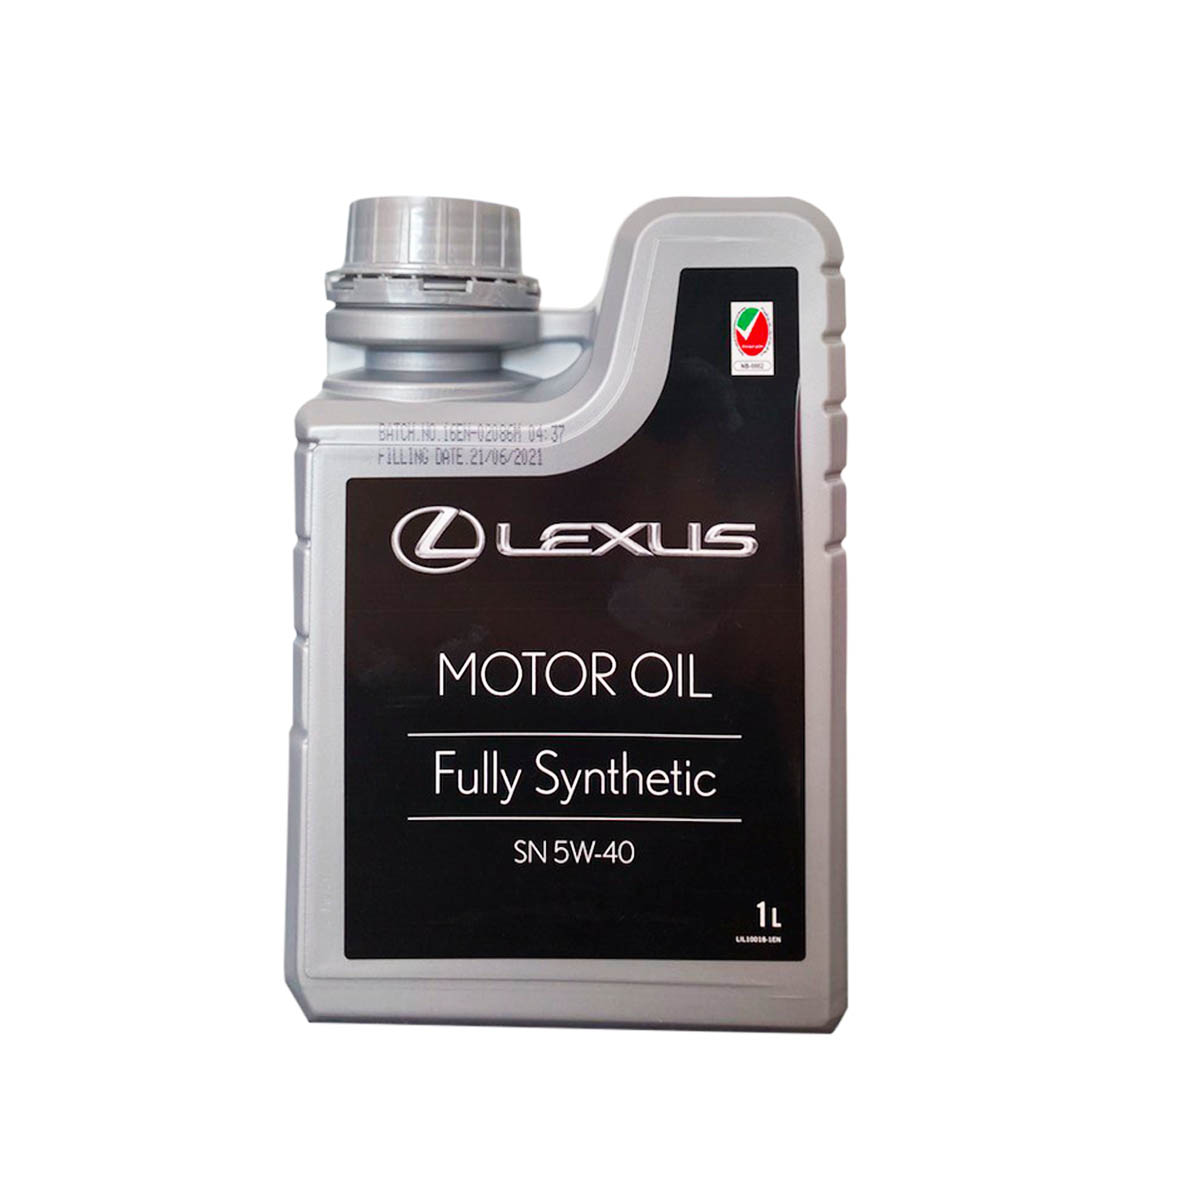 lexus-motor-oil-1L